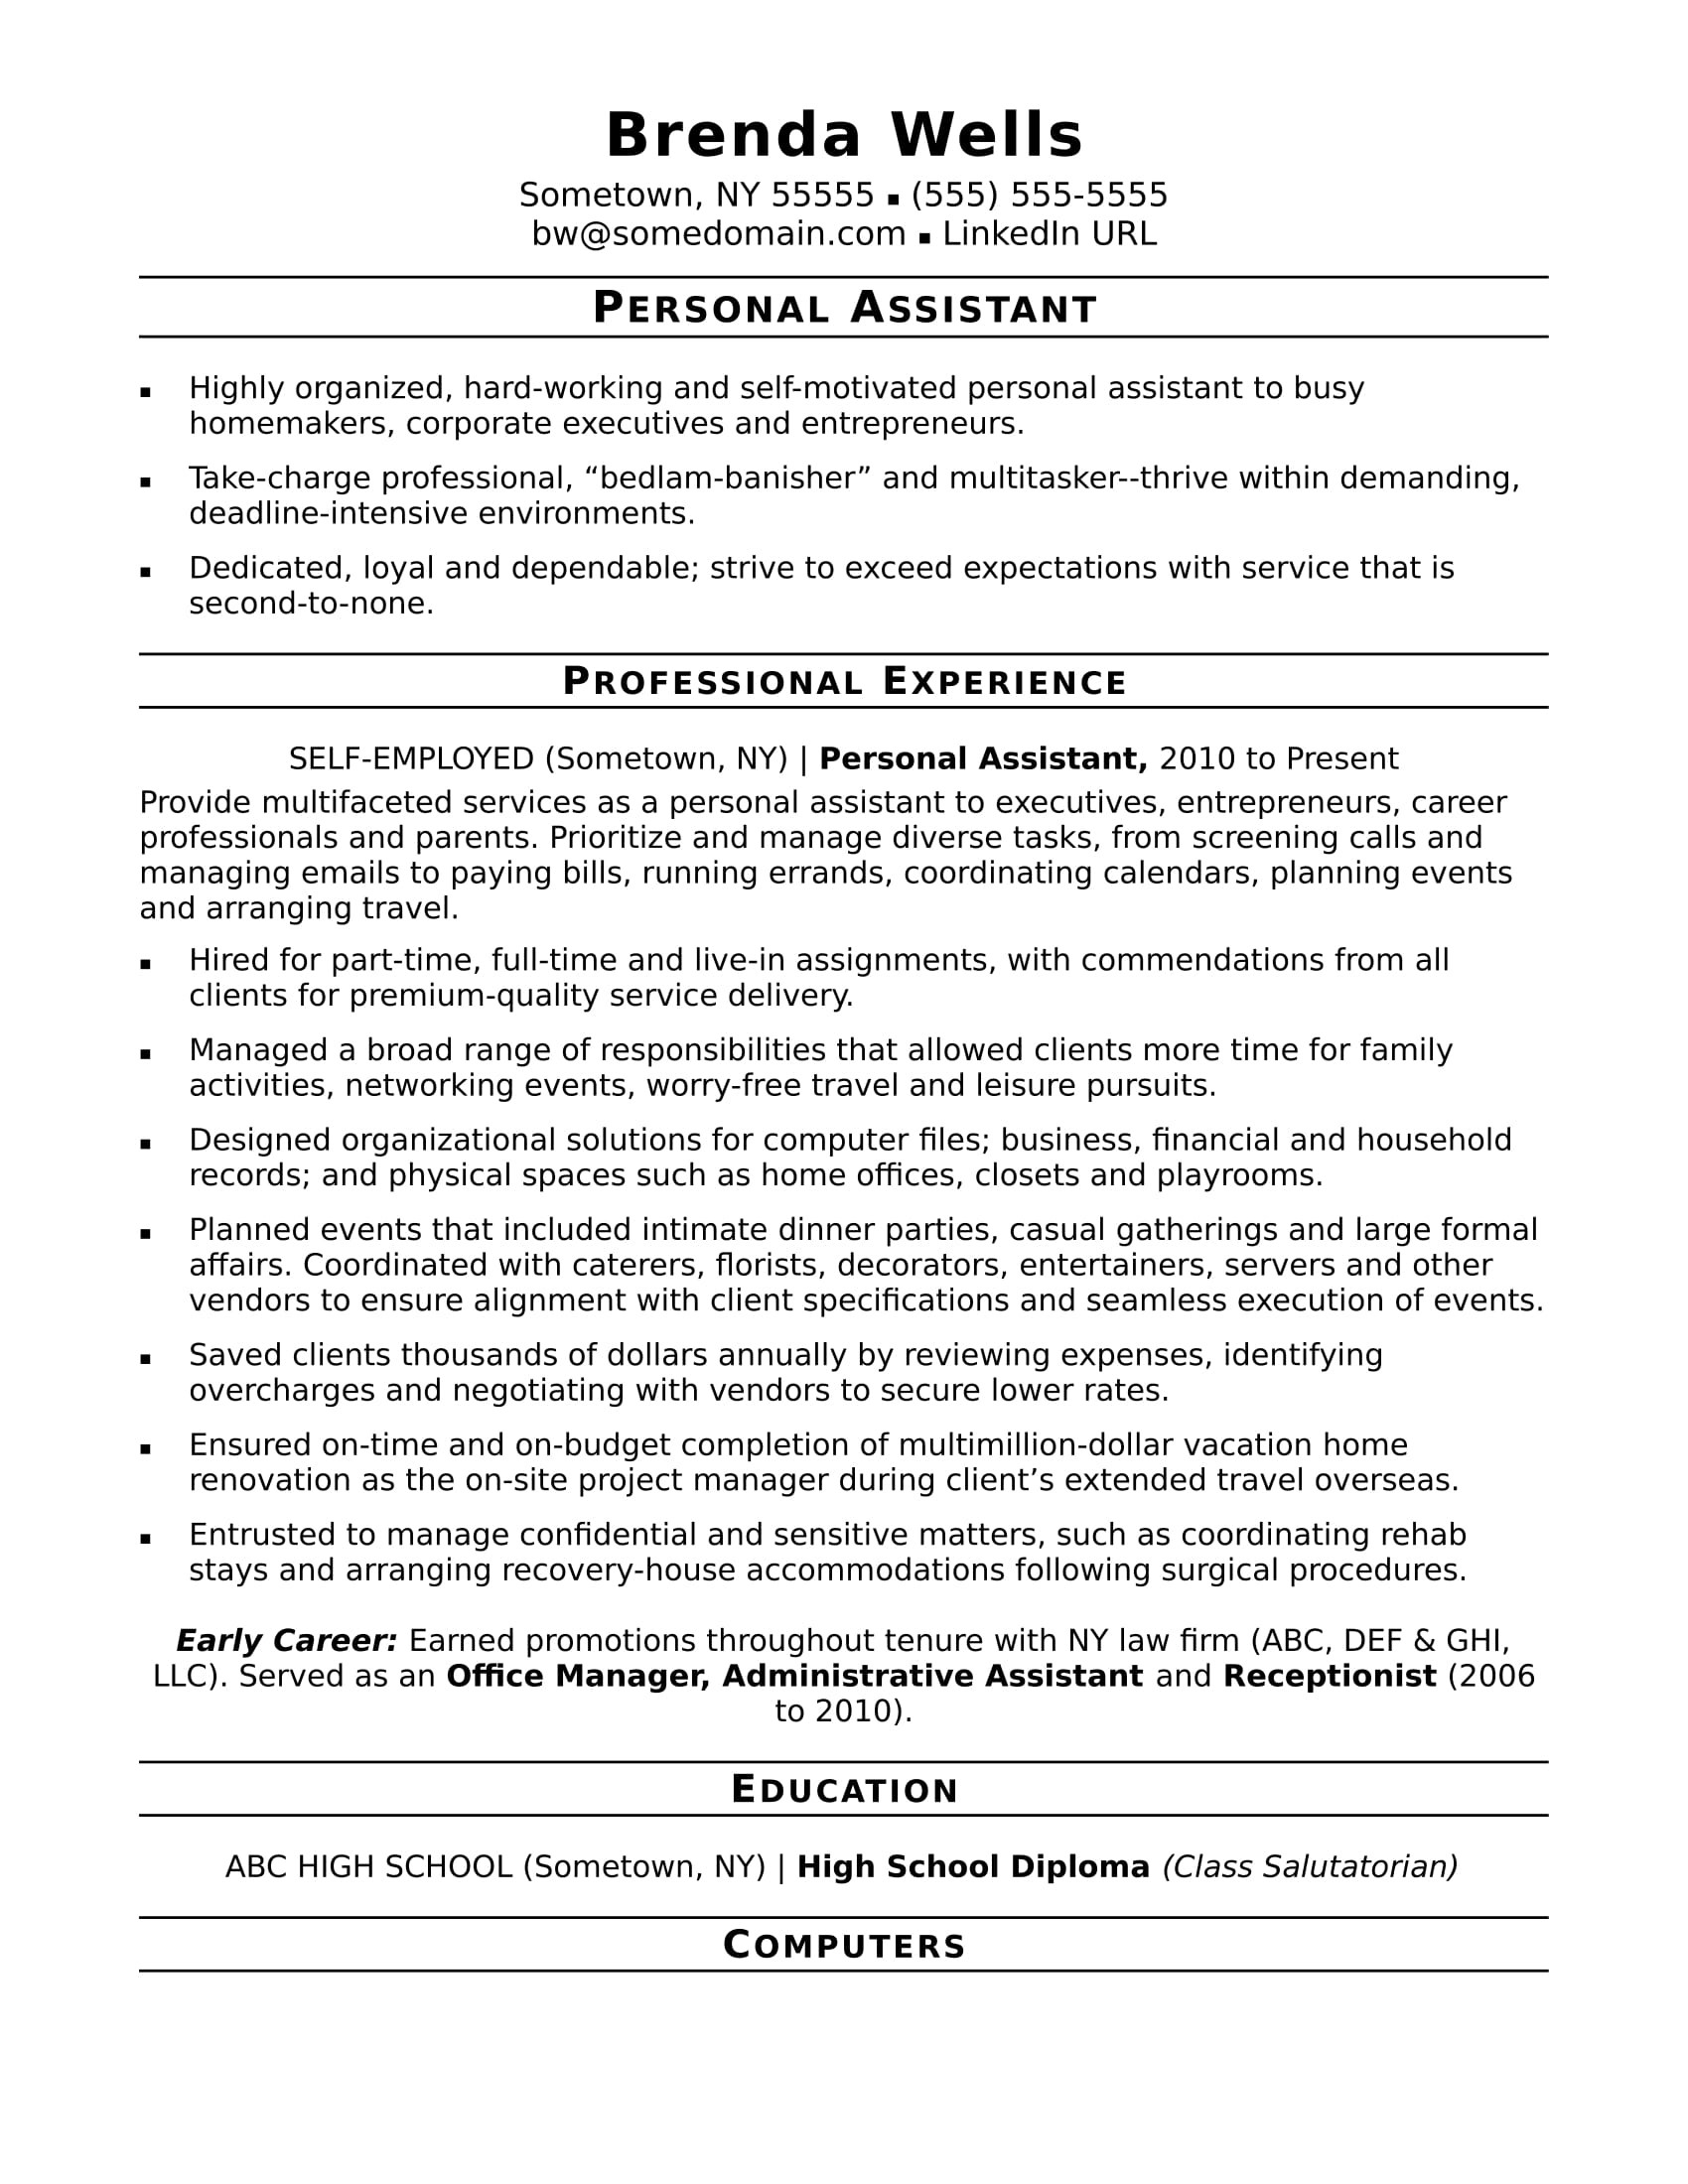 Administrative assistant Job Description Resume Sample Personal assistant Resume Sample